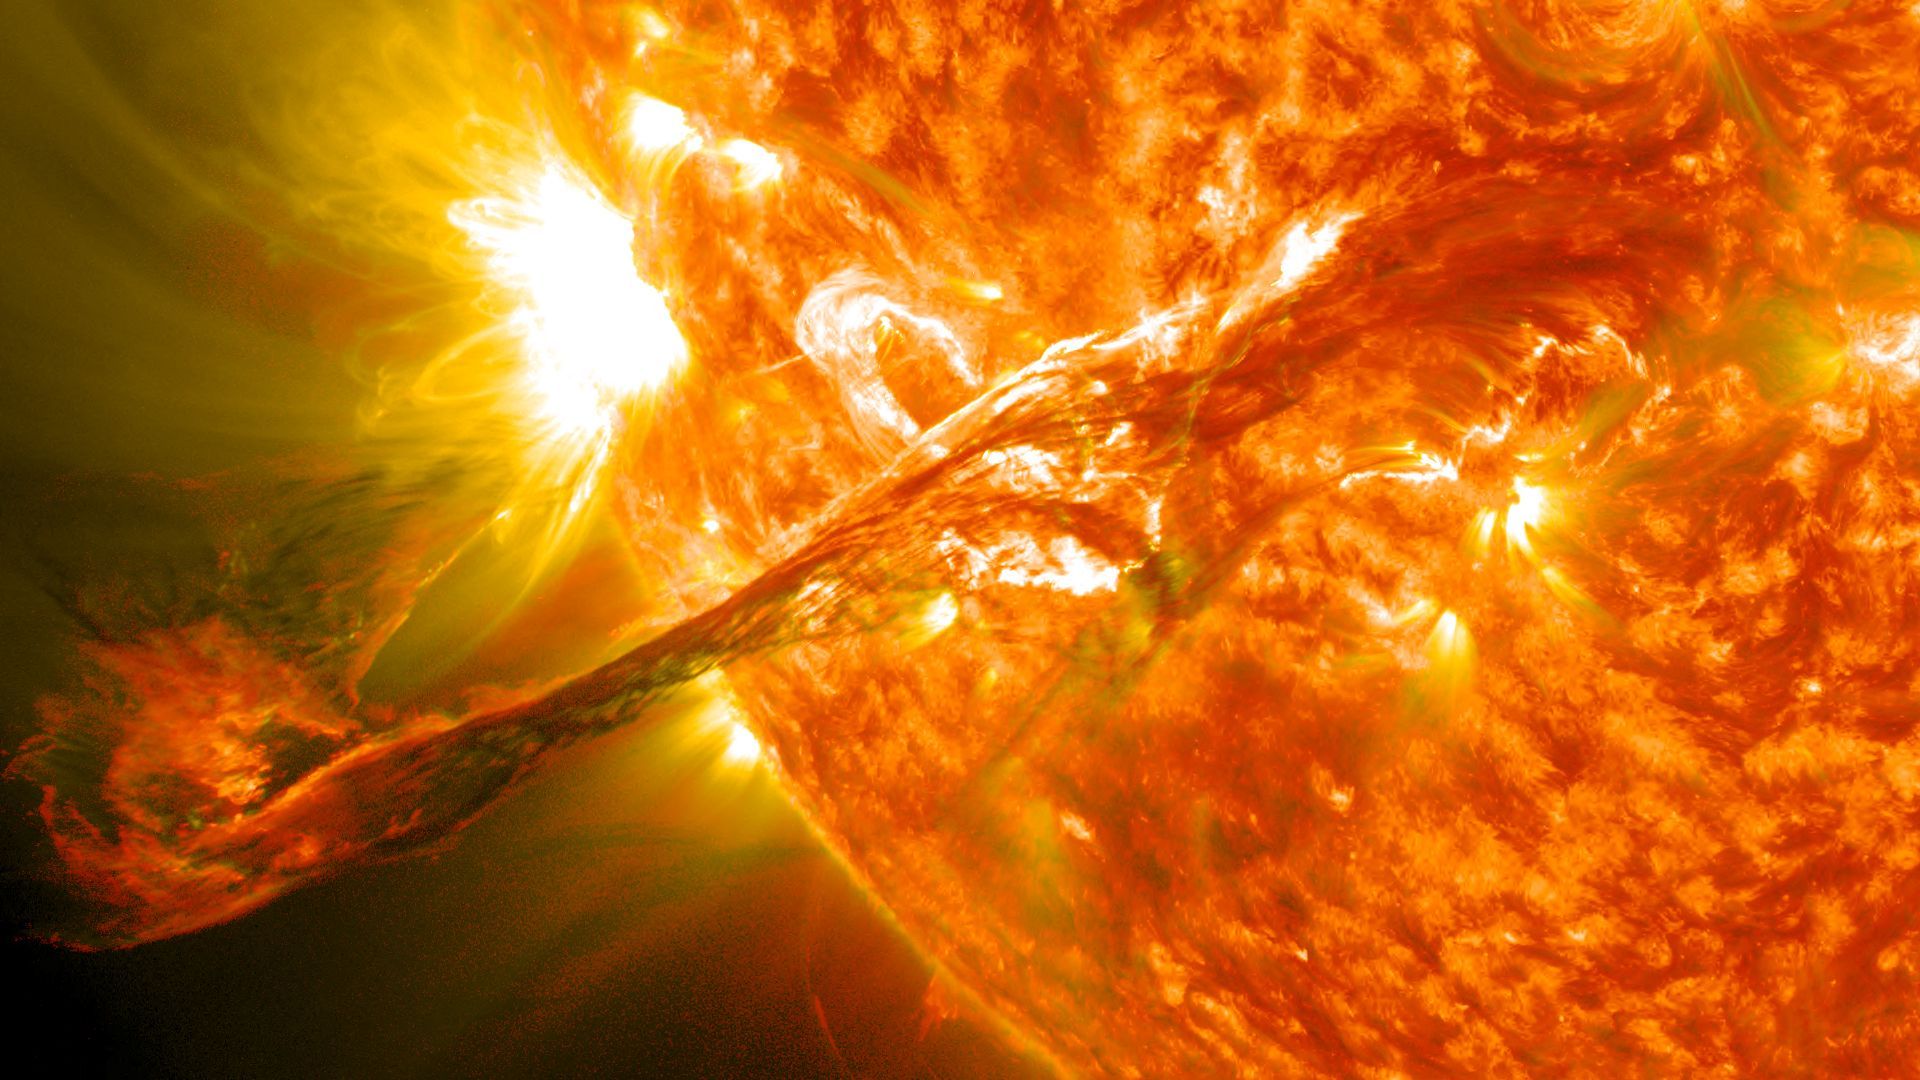 Vue rapprochée d’une protubérance géante, éjectée du Soleil lors d’une éruption solaire le 31/08/2012 avec une vitesse d’expansion de 1500km/s.